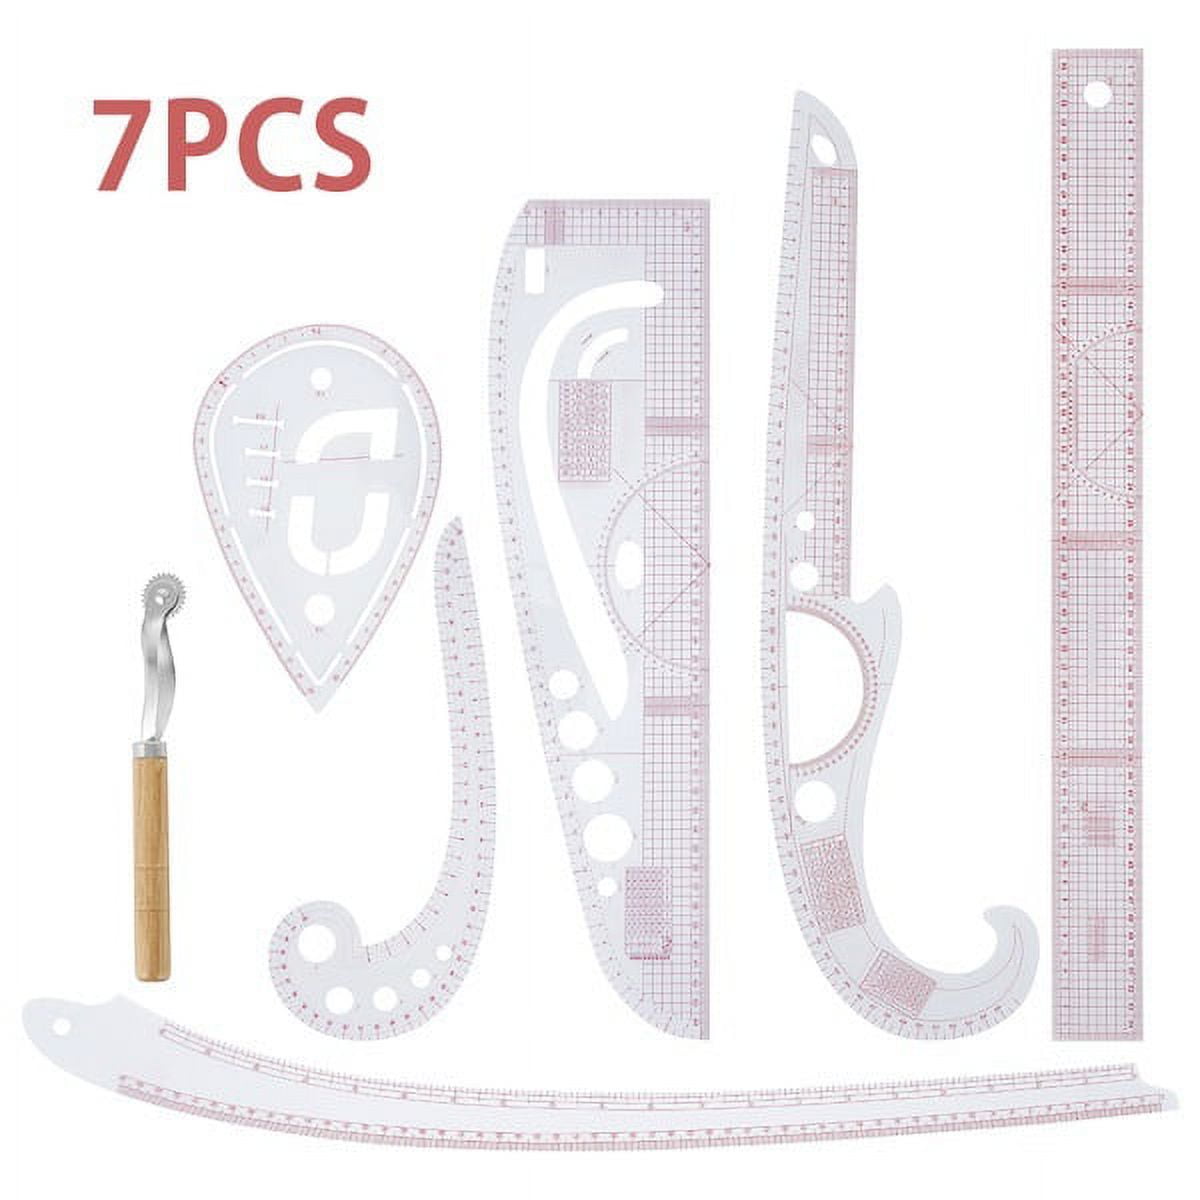 PCC BARE Sewing & Pattern-making Supplies Kit